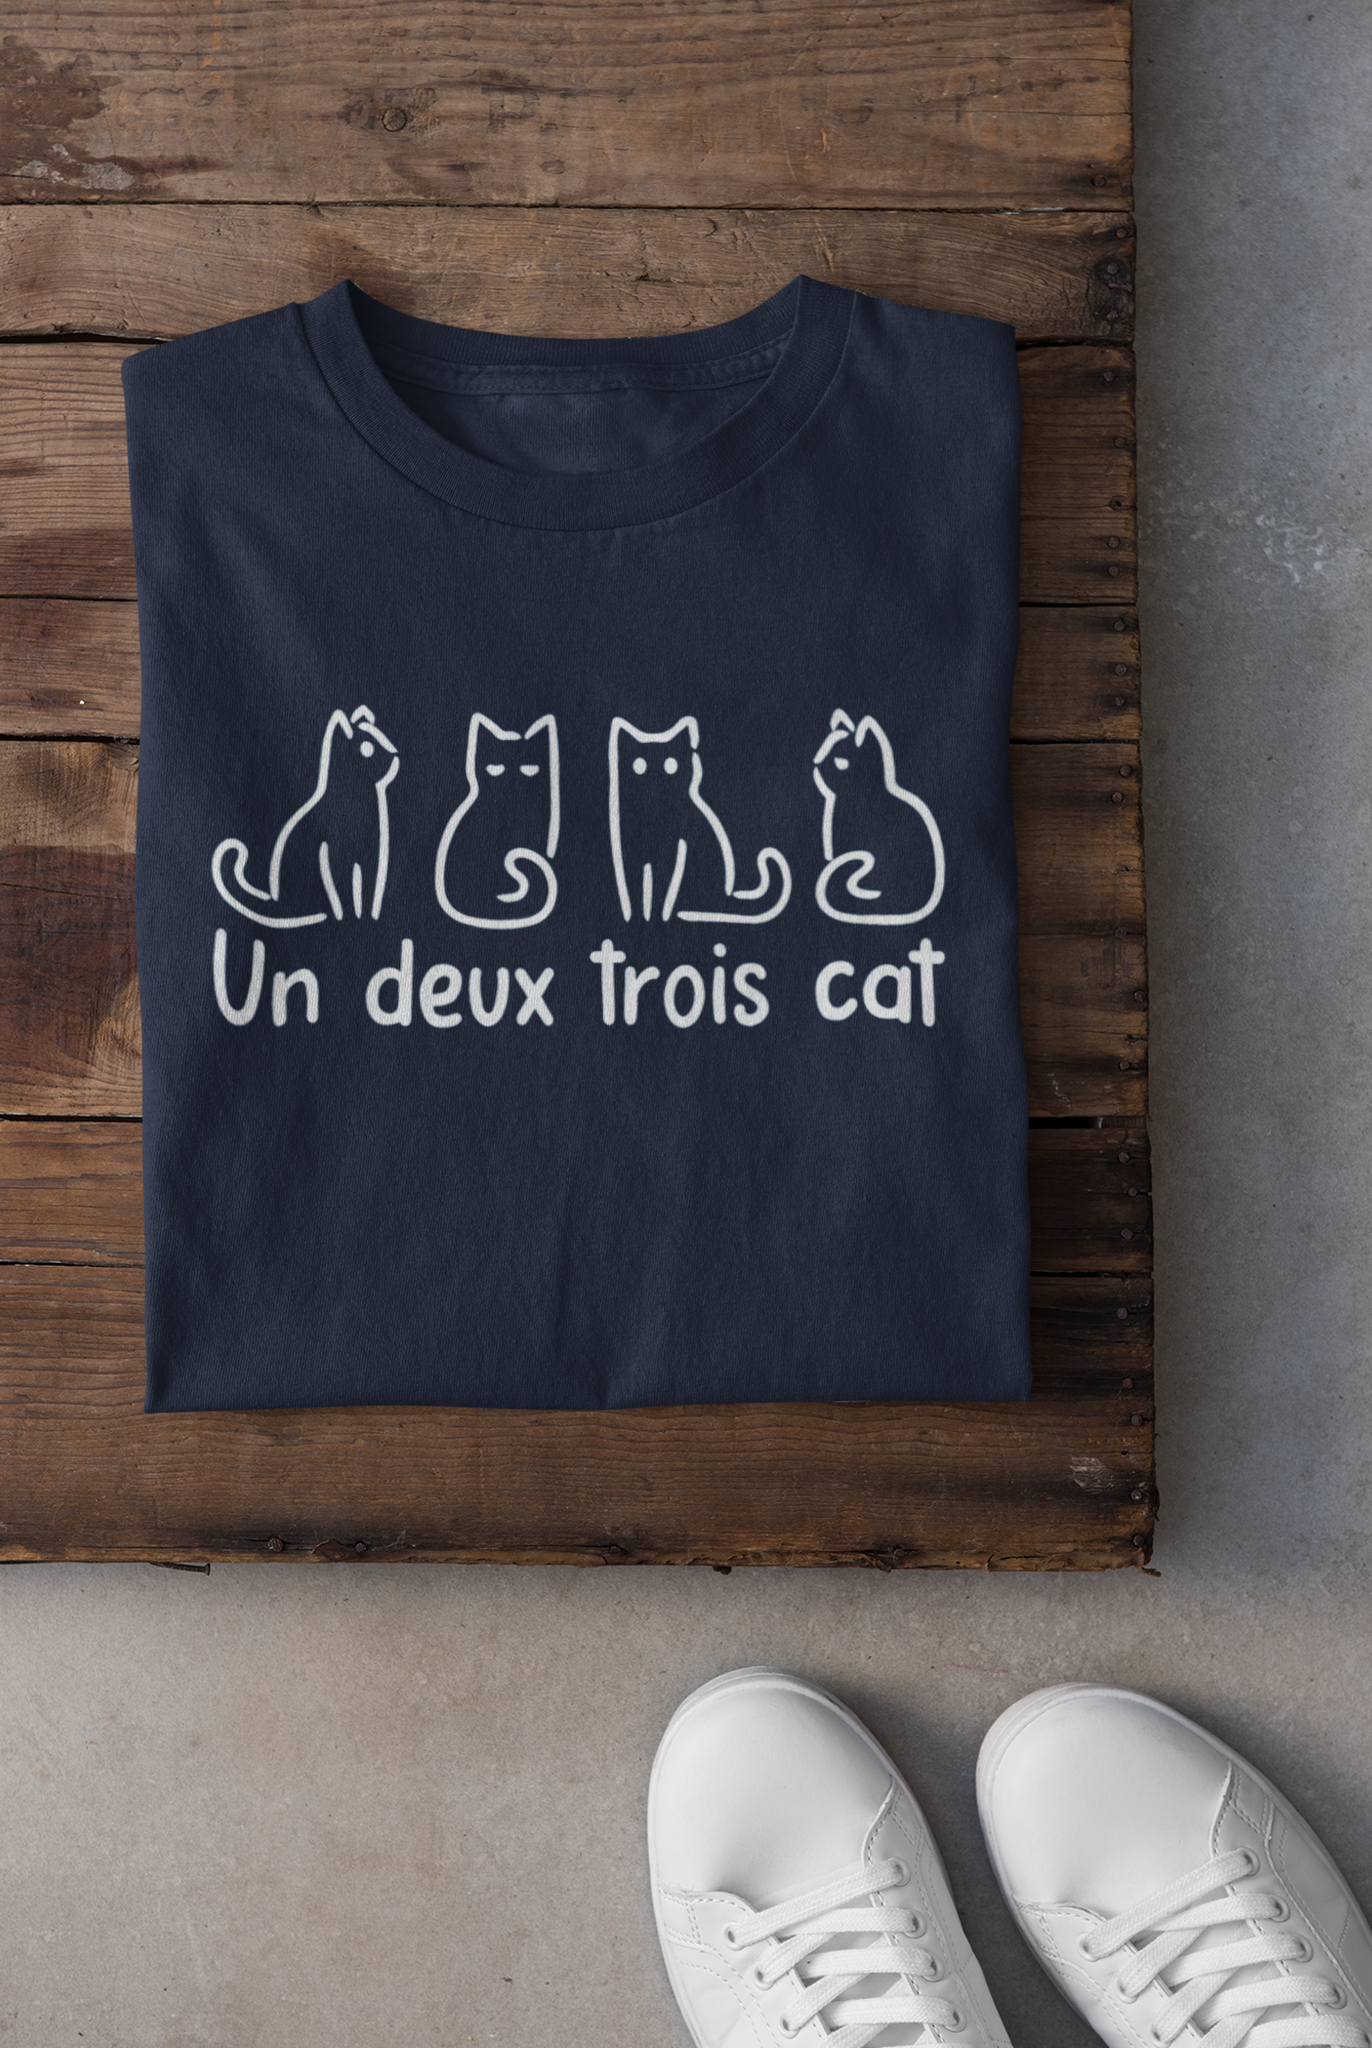 T-shirt - Un, deux, trois, cat